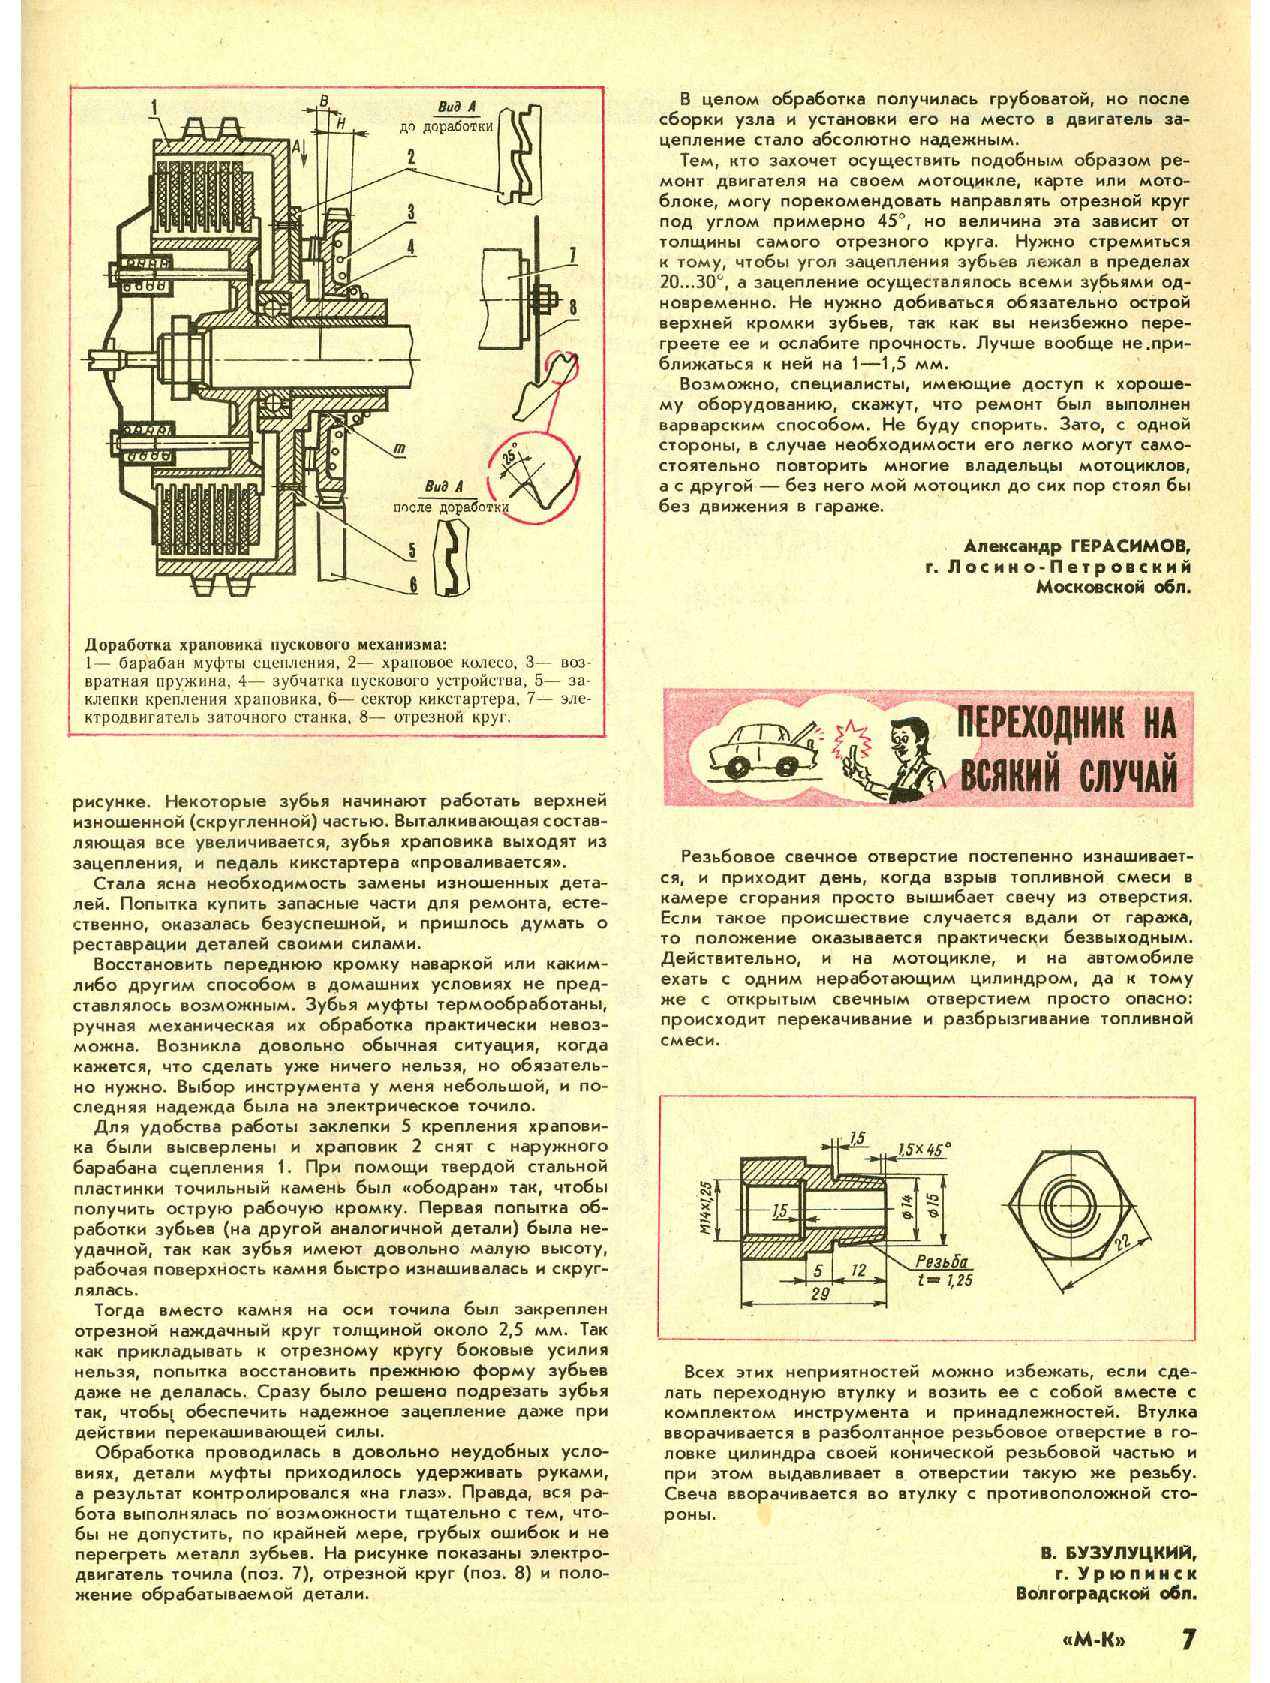 МК 7, 1992, 7 c.